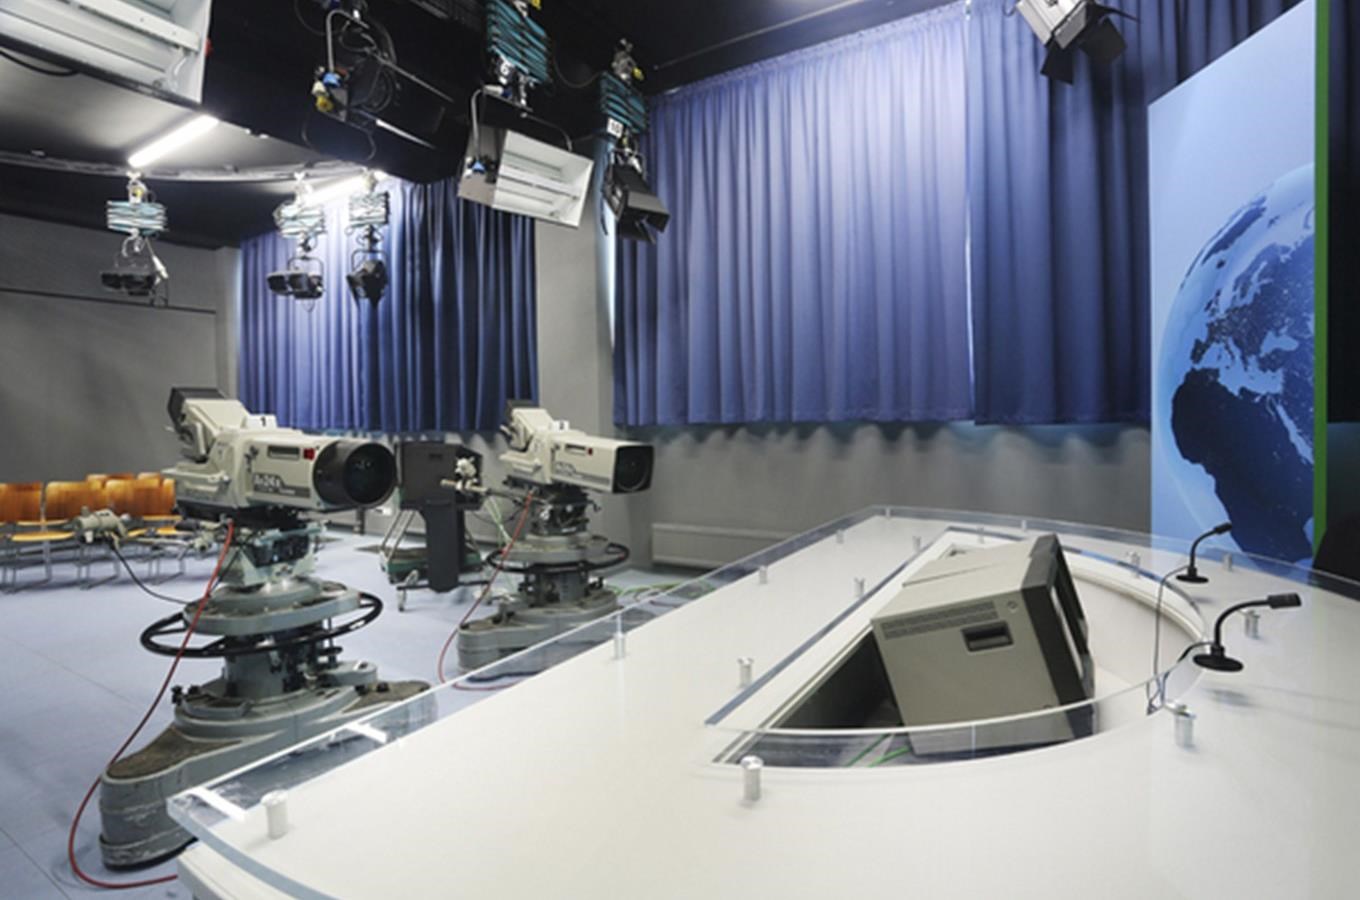 Národní technické muzeum otevrelo novou expozici televizního studia